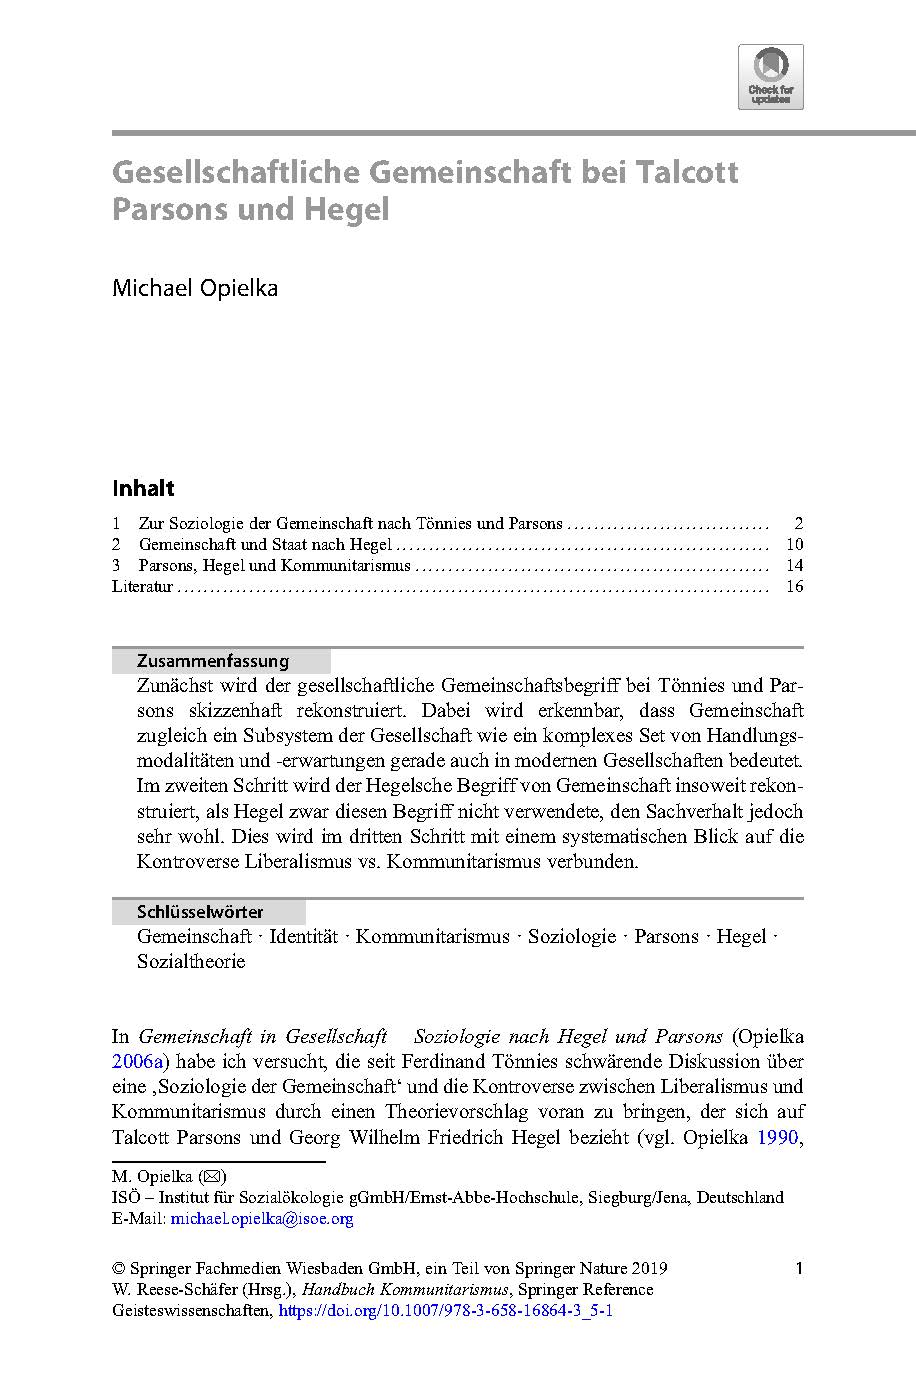 Michael Opielka, Gesellschaftliche Gemeinschaft bei Talcott Parsons und Hegel (2019) 